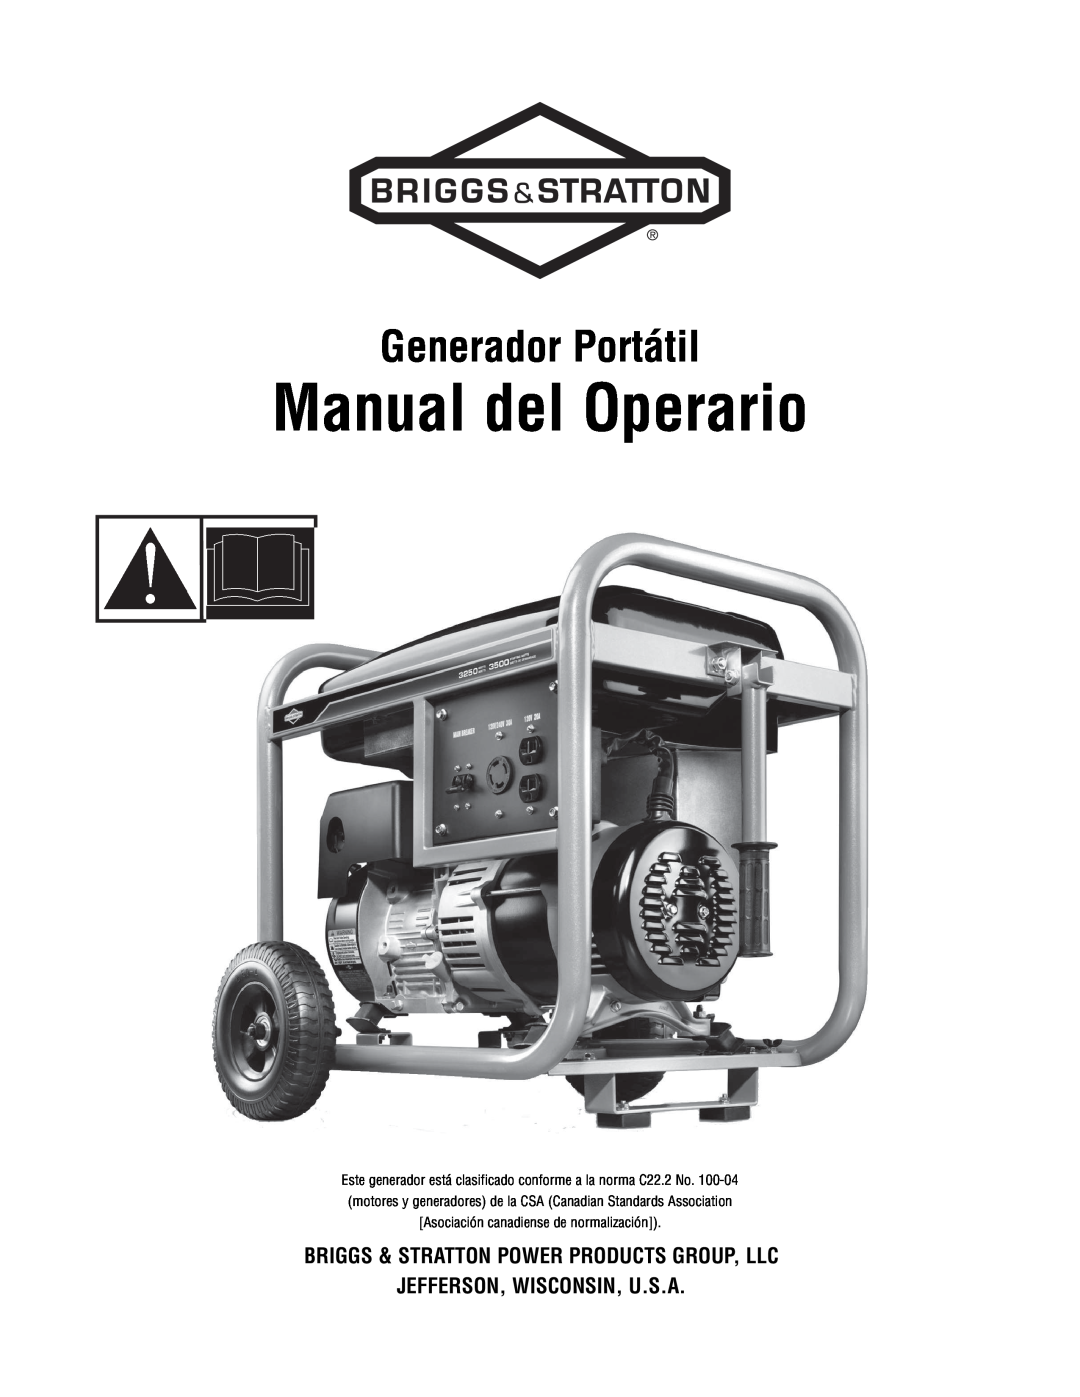 Briggs & Stratton 209443gs manual Manual del Operario, Generador Portátil, Briggs & Stratton Power Products Group, Llc 